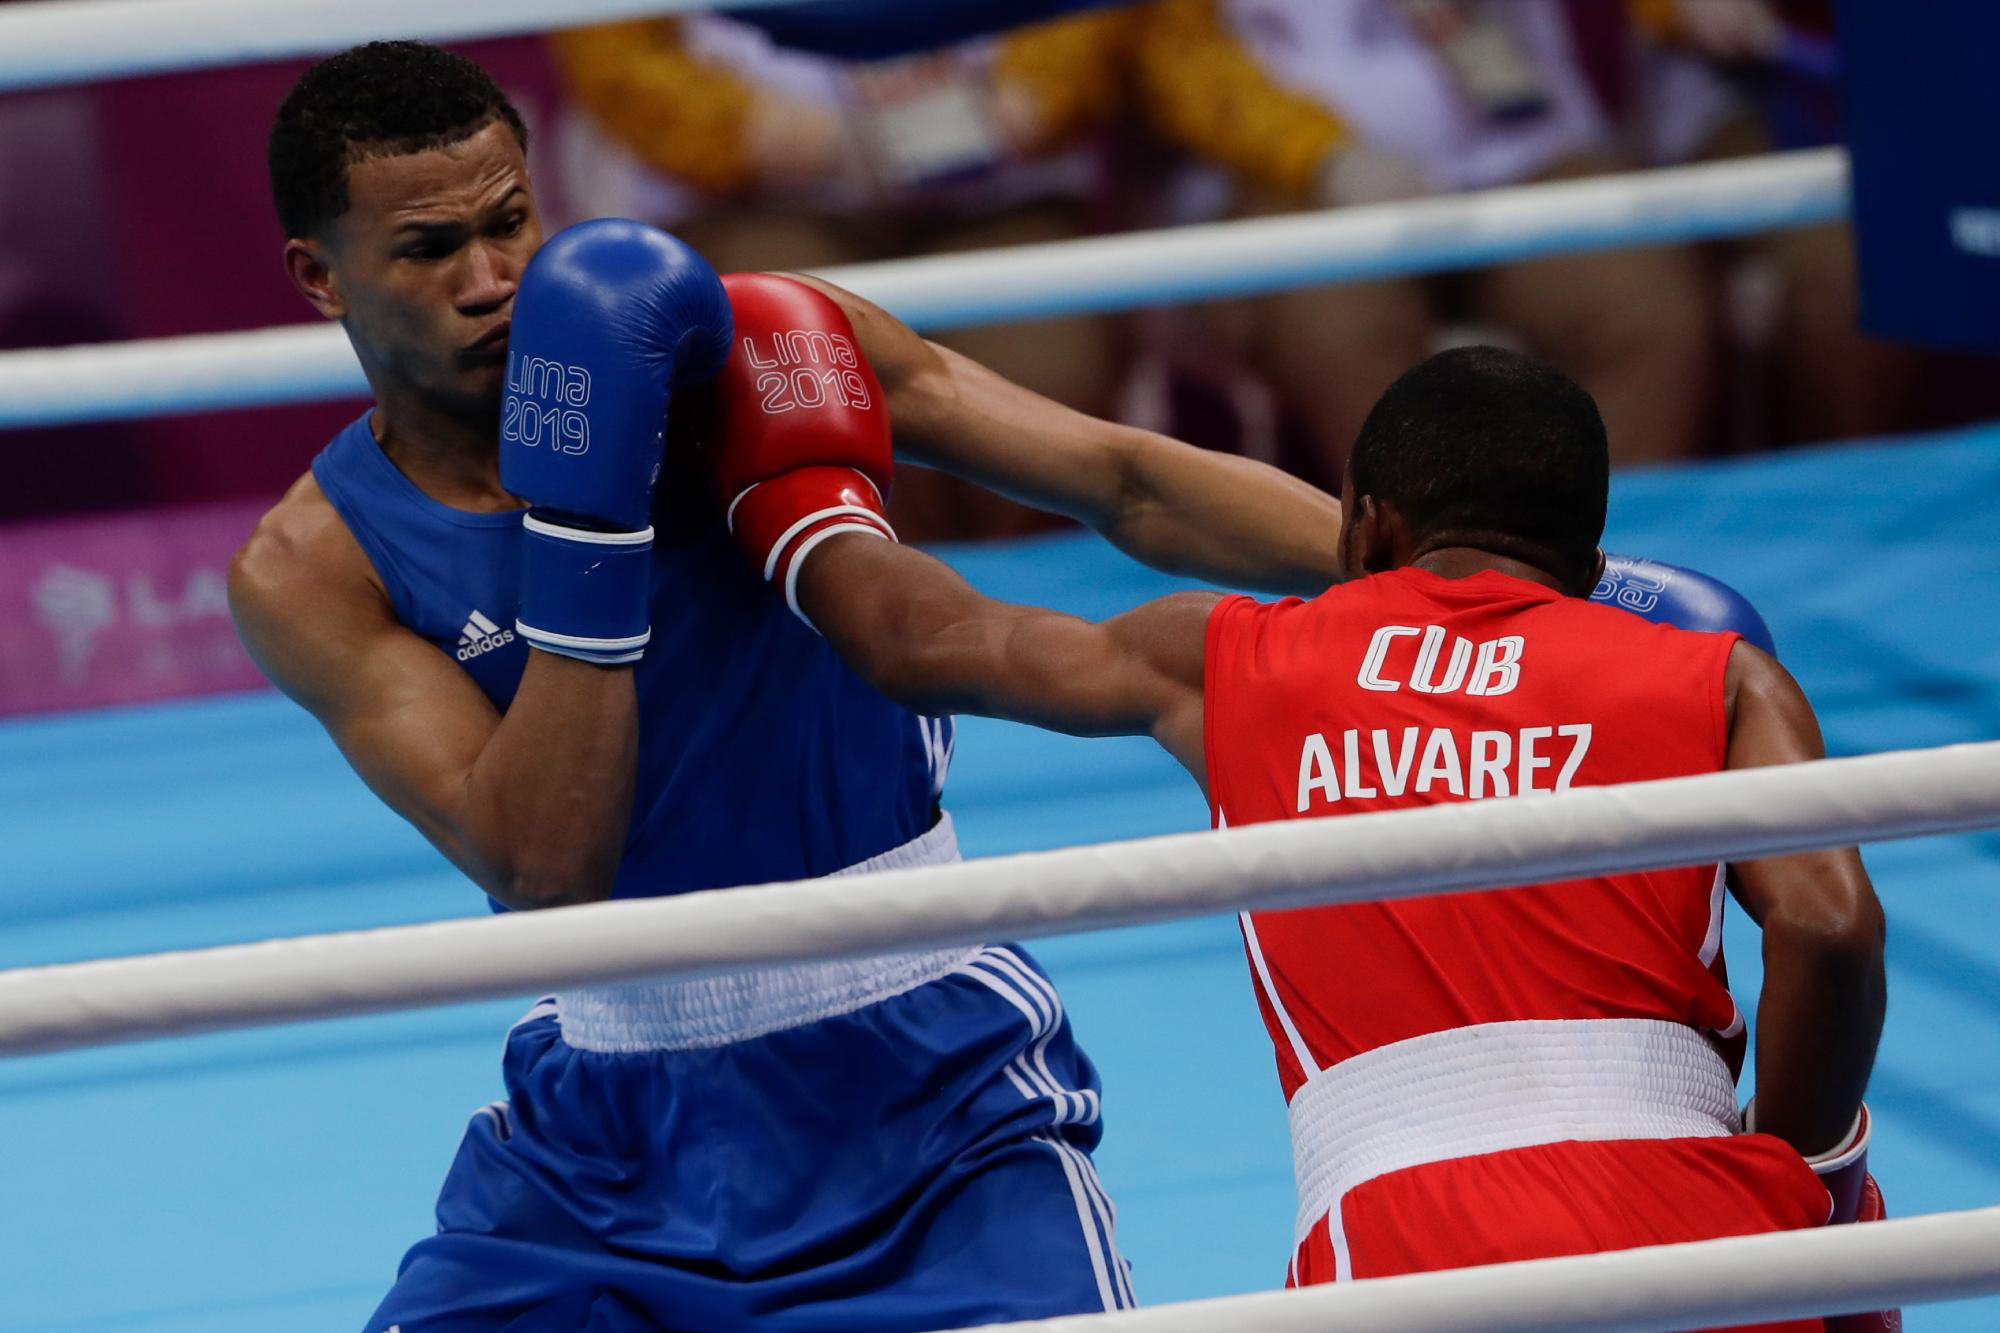 El dominicano Leonel de los Santos, a la izquierda, recibe un golpe del cubano Lázaro Álvarez en la pelea final masculina de 60 kg en los Juegos Panamericanos en Lima, Perú, el jueves 1 de agosto de 2019. Álvarez ganó la medalla de oro. 